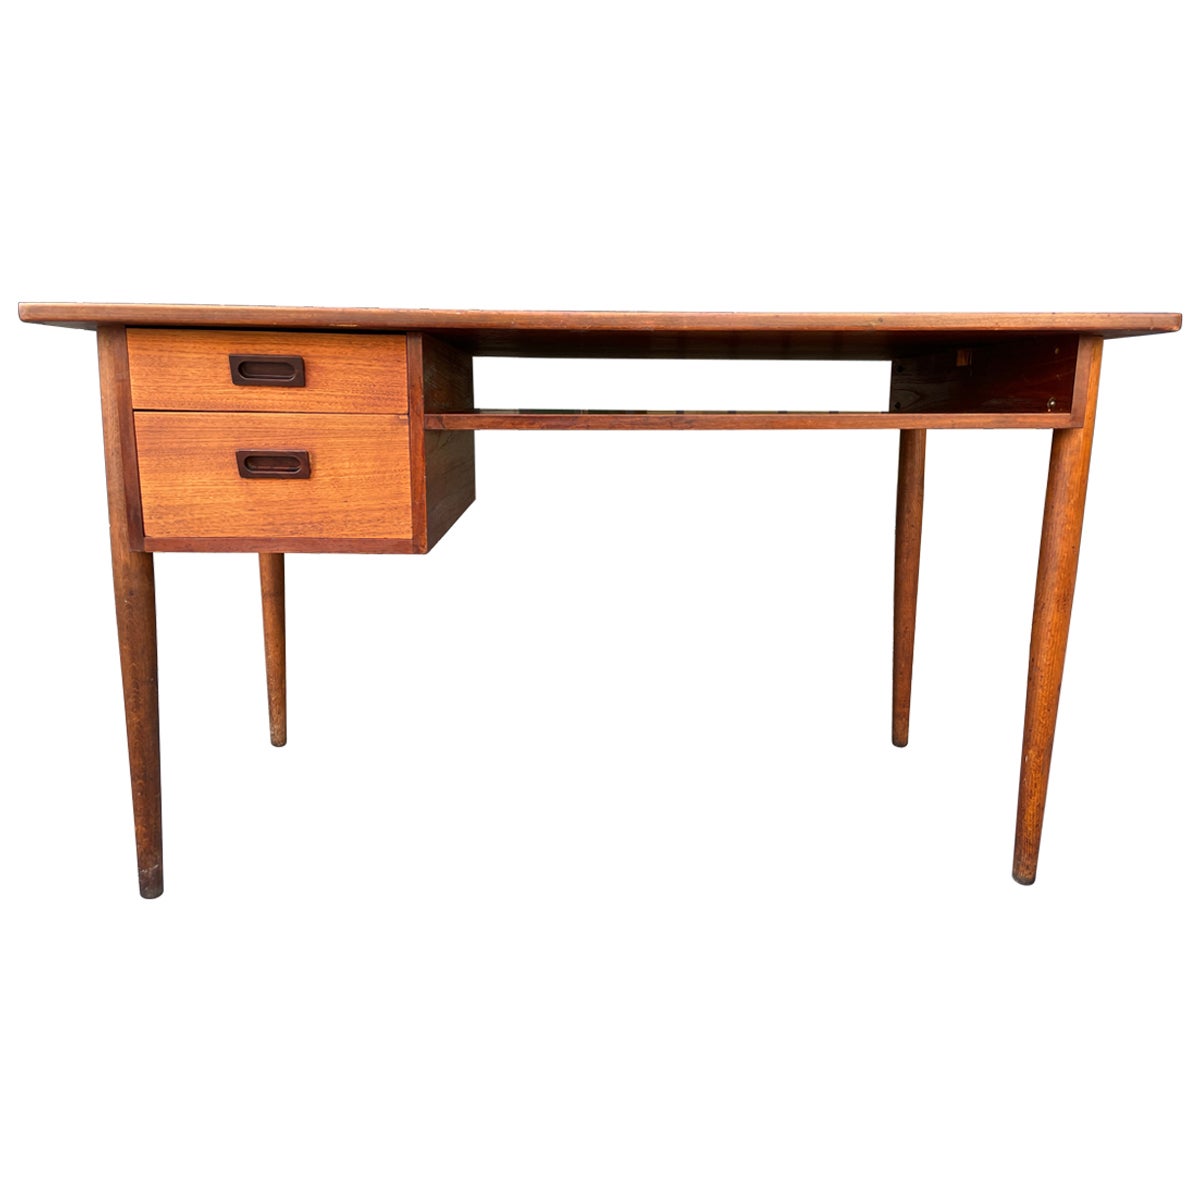 Midcentury Danish Modern Teak Desk 2 Drawers For Sale